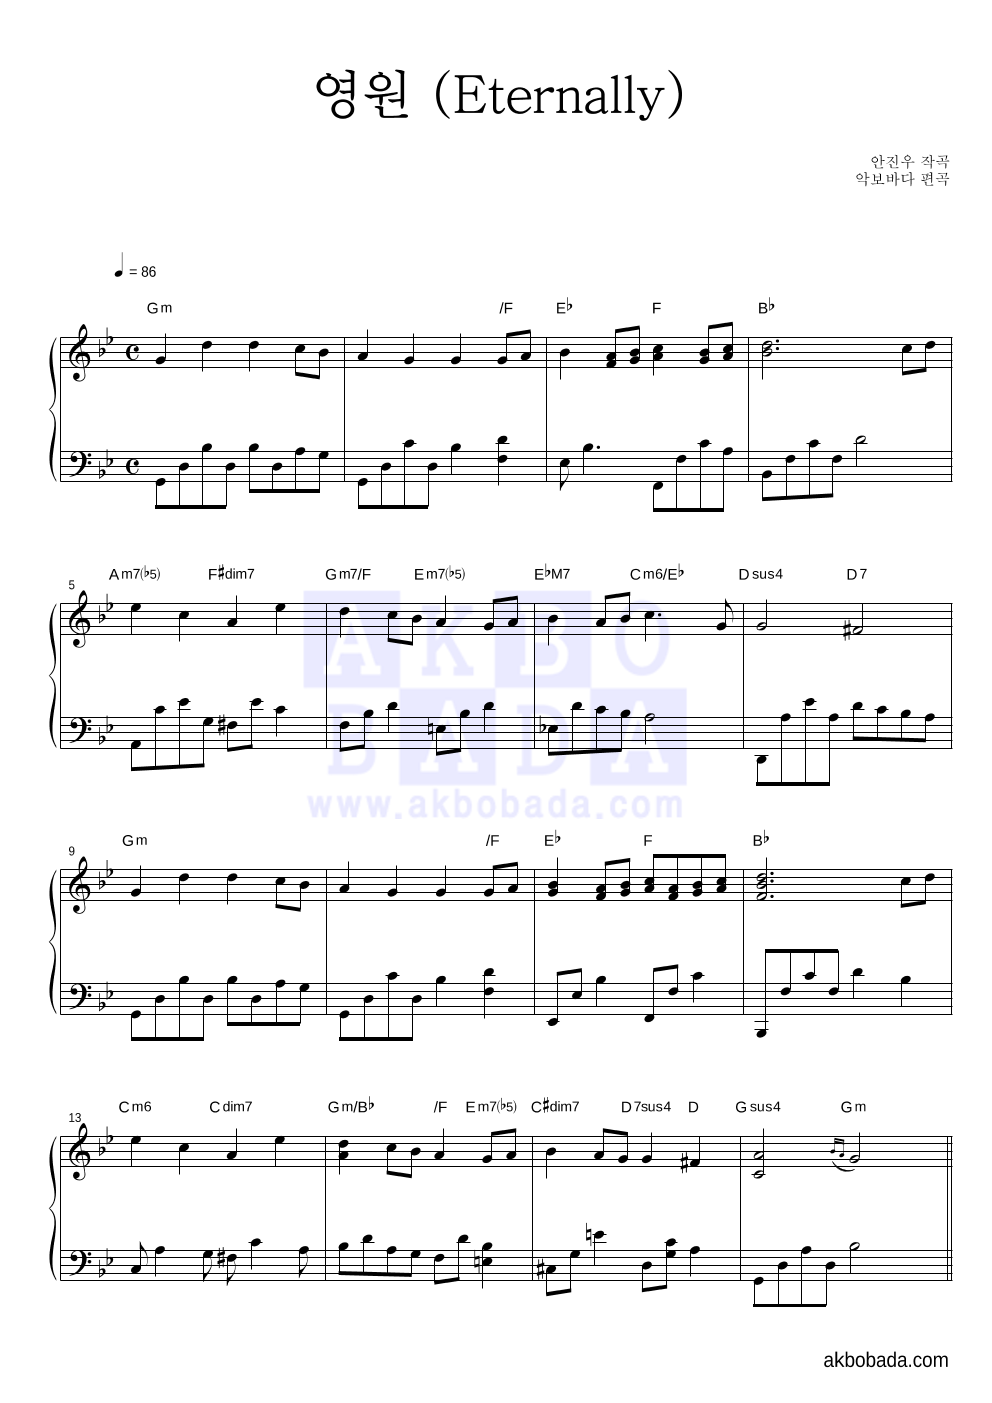 리니지 OST - 영원 (Eternally) 피아노 마스터 악보 